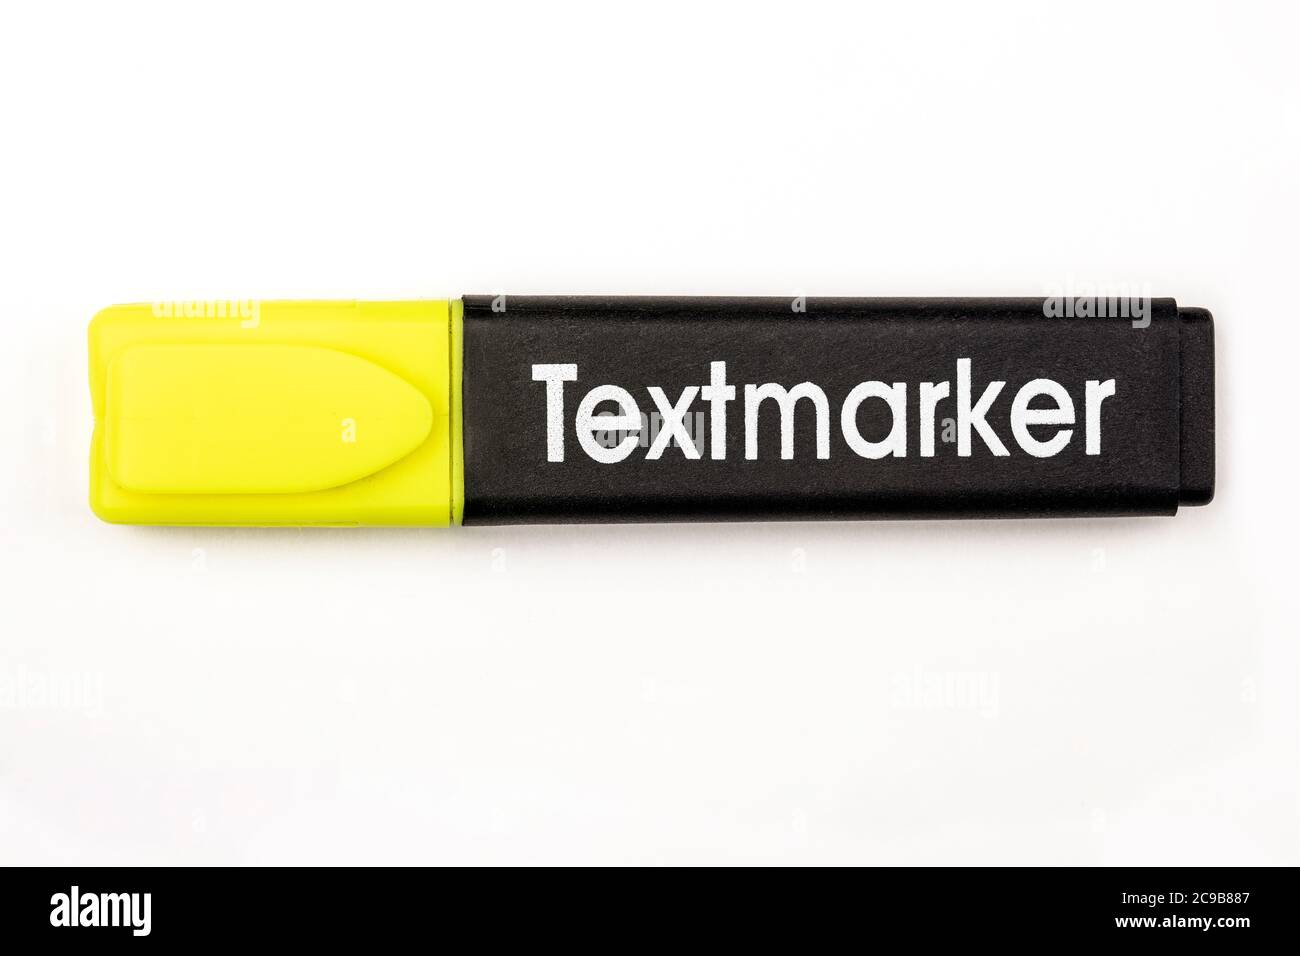 Yellow Textmarker on white background Stock Photo